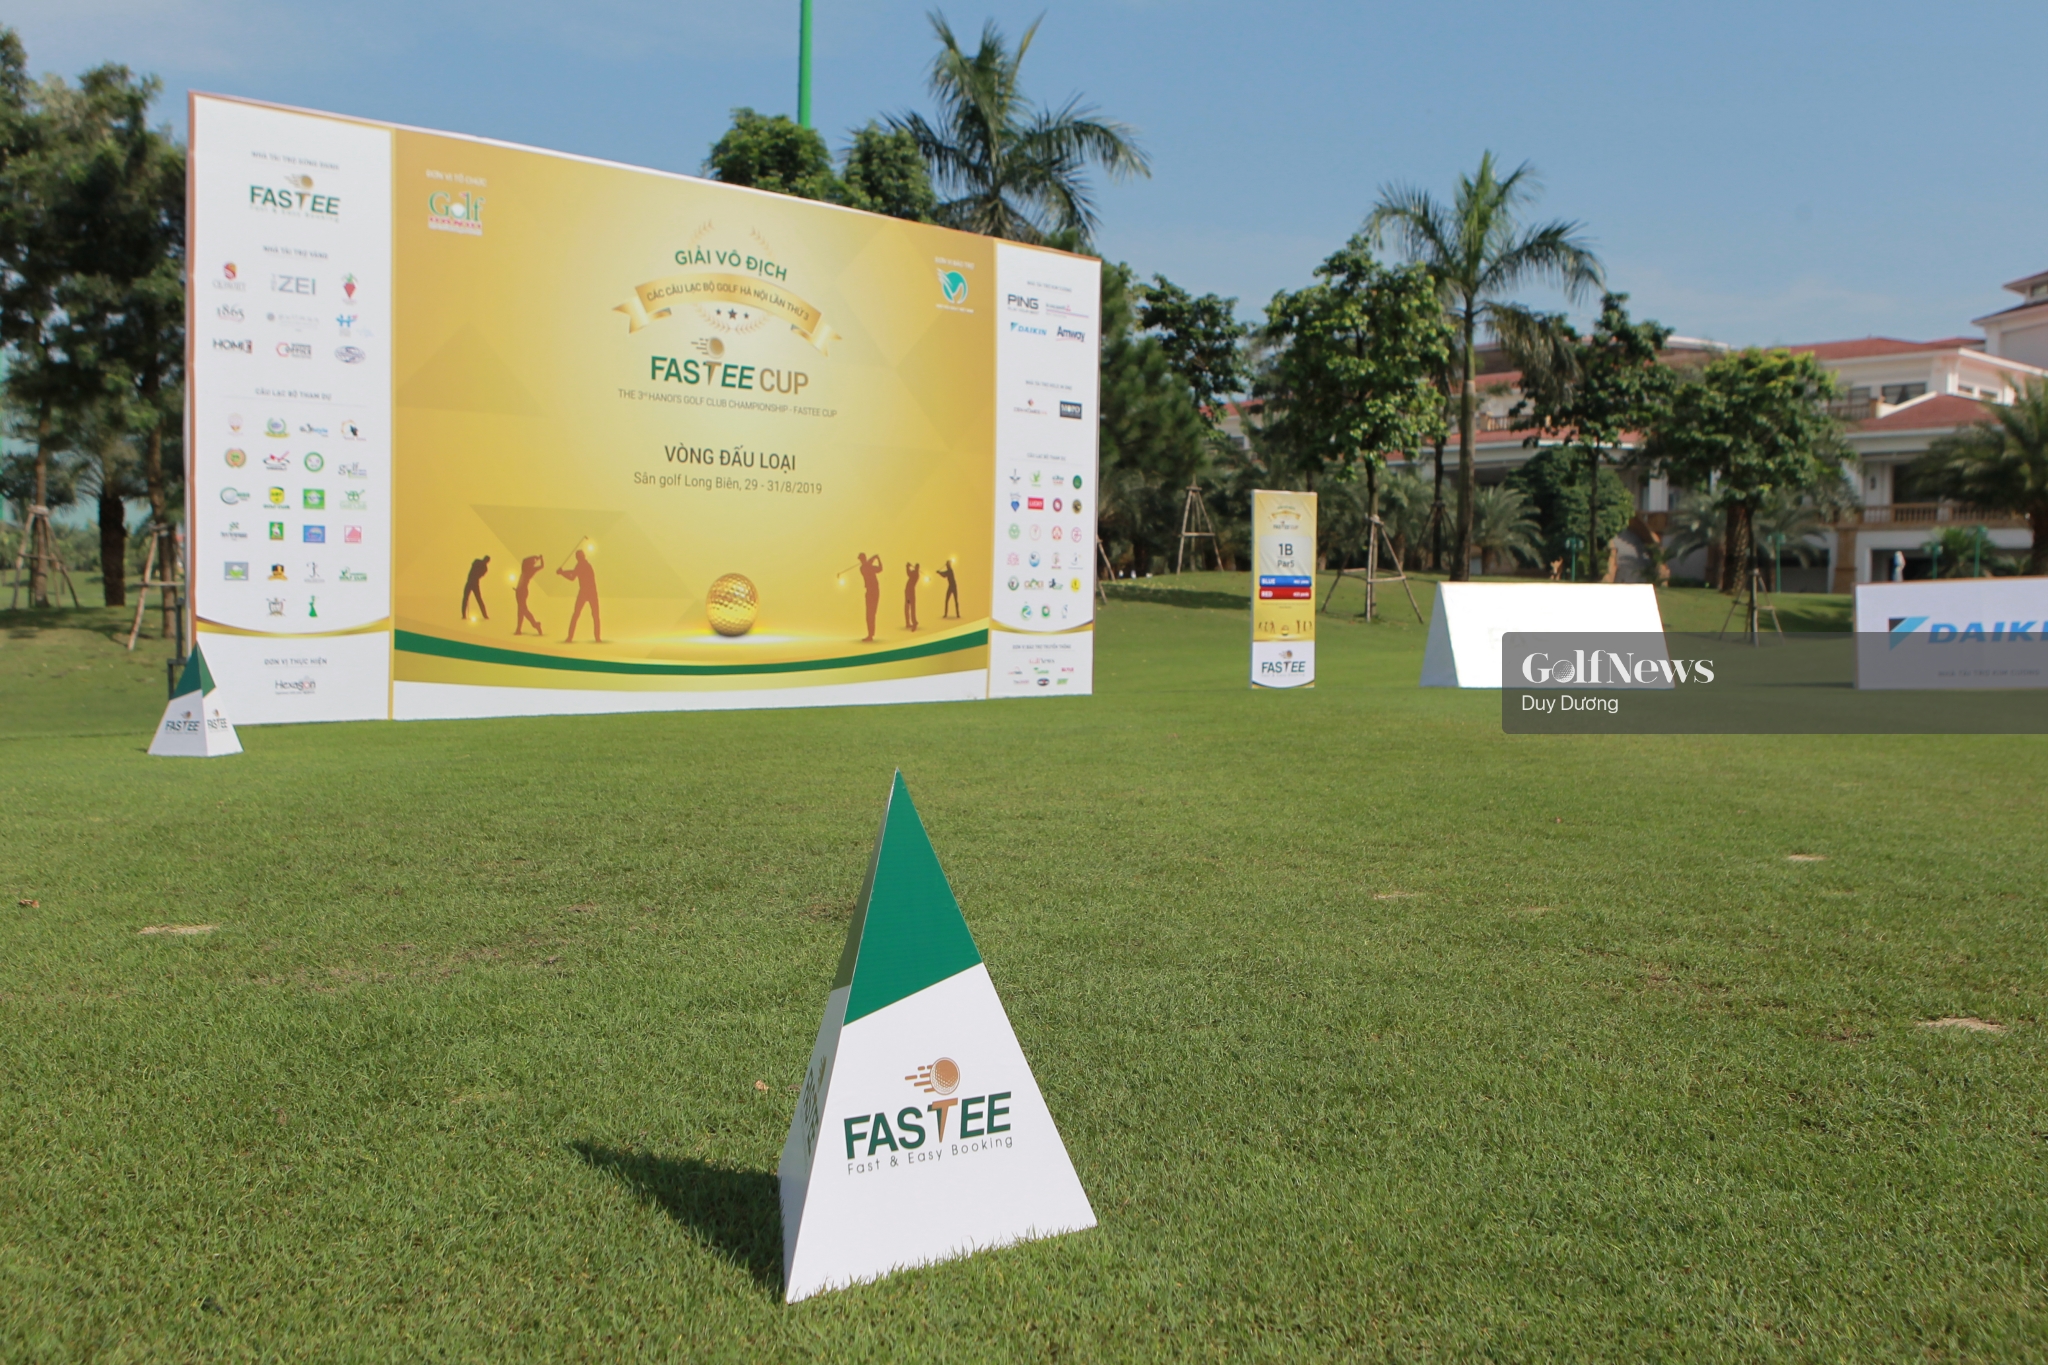 Quang cảnh trước giờ khởi tranh vòng loại đầu tiên giải Vô địch các CLB Golf Hà Nội lần 3 – Fastee Cup